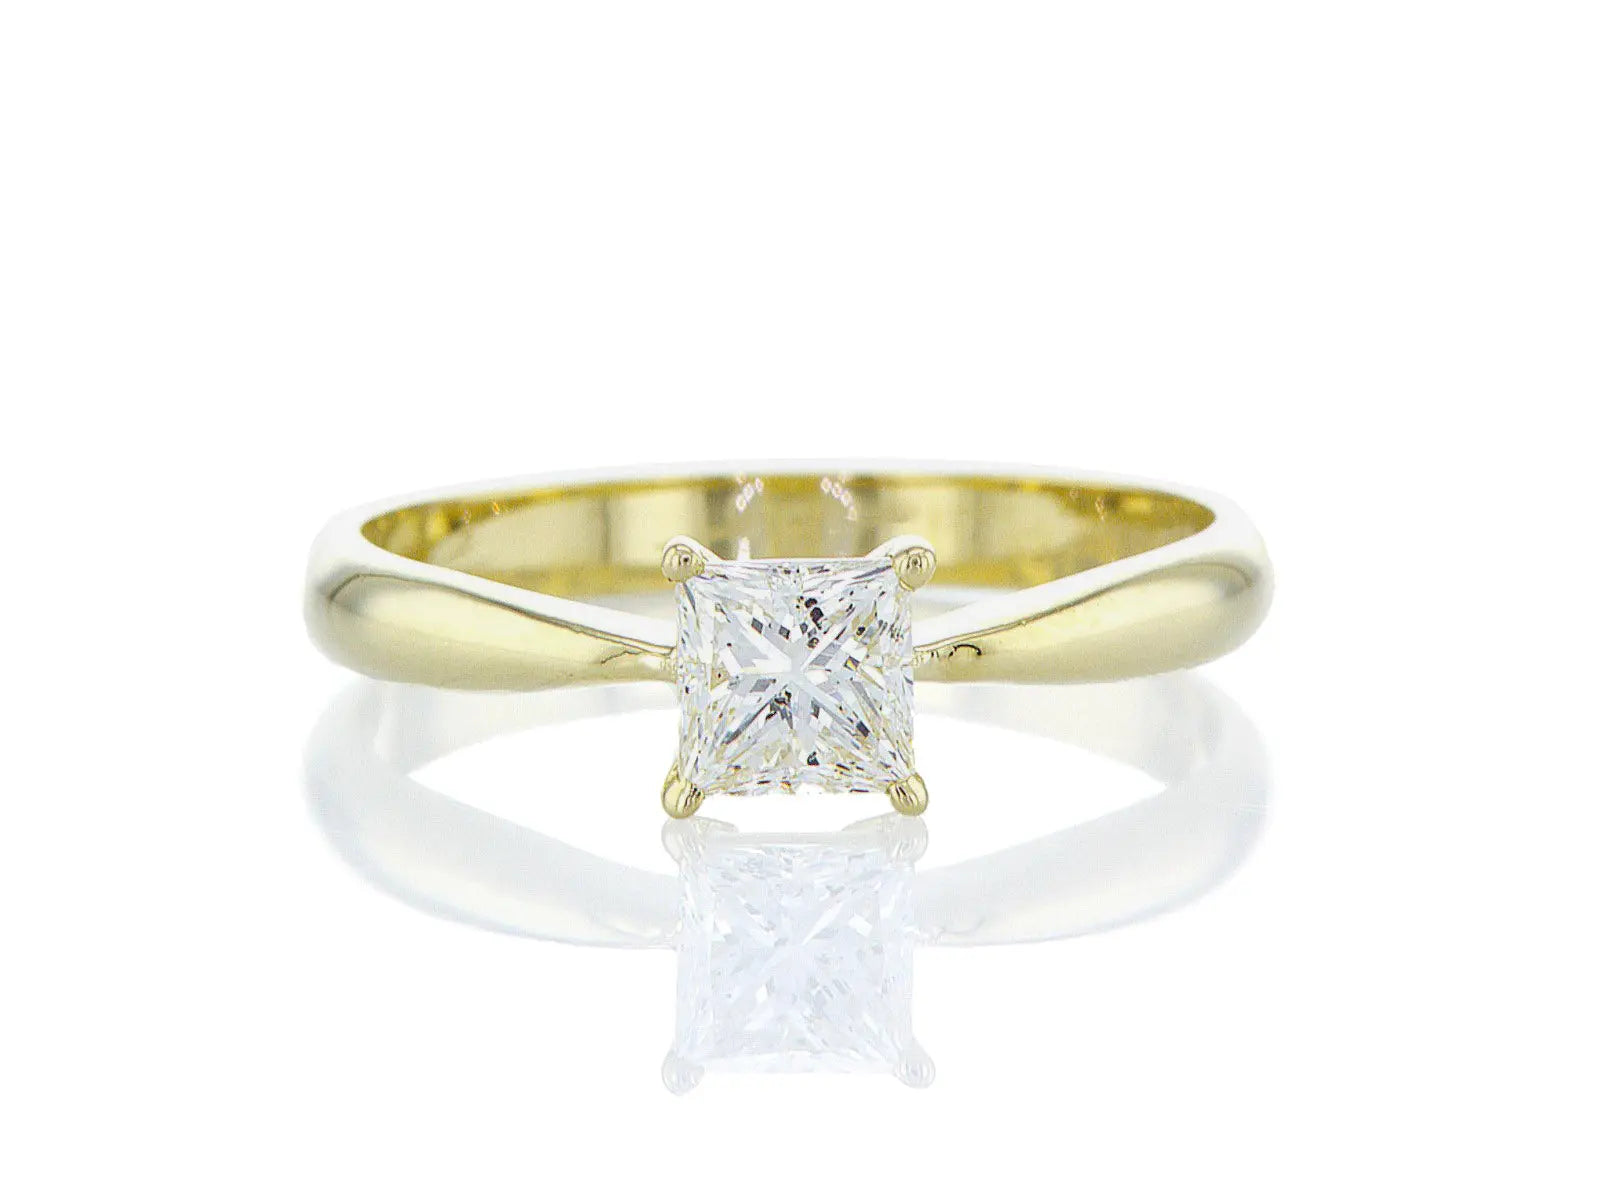 טבעת אירוסין אורלי Fermond Jewelery. טבעת אירוסין אורלי משובצת באבן בליטוש פרינסס מרשימה, המכילה יהלום טבעי עגול מרכזי במשקל 0.24 קראט. הטבעת הזו משלבת את היוקרה והברק של טבעת יהלומים עם האלגנטיות הנצחית, ומציעה יופי ואופנה שמתאימים לאירוע של פעם בחיים.